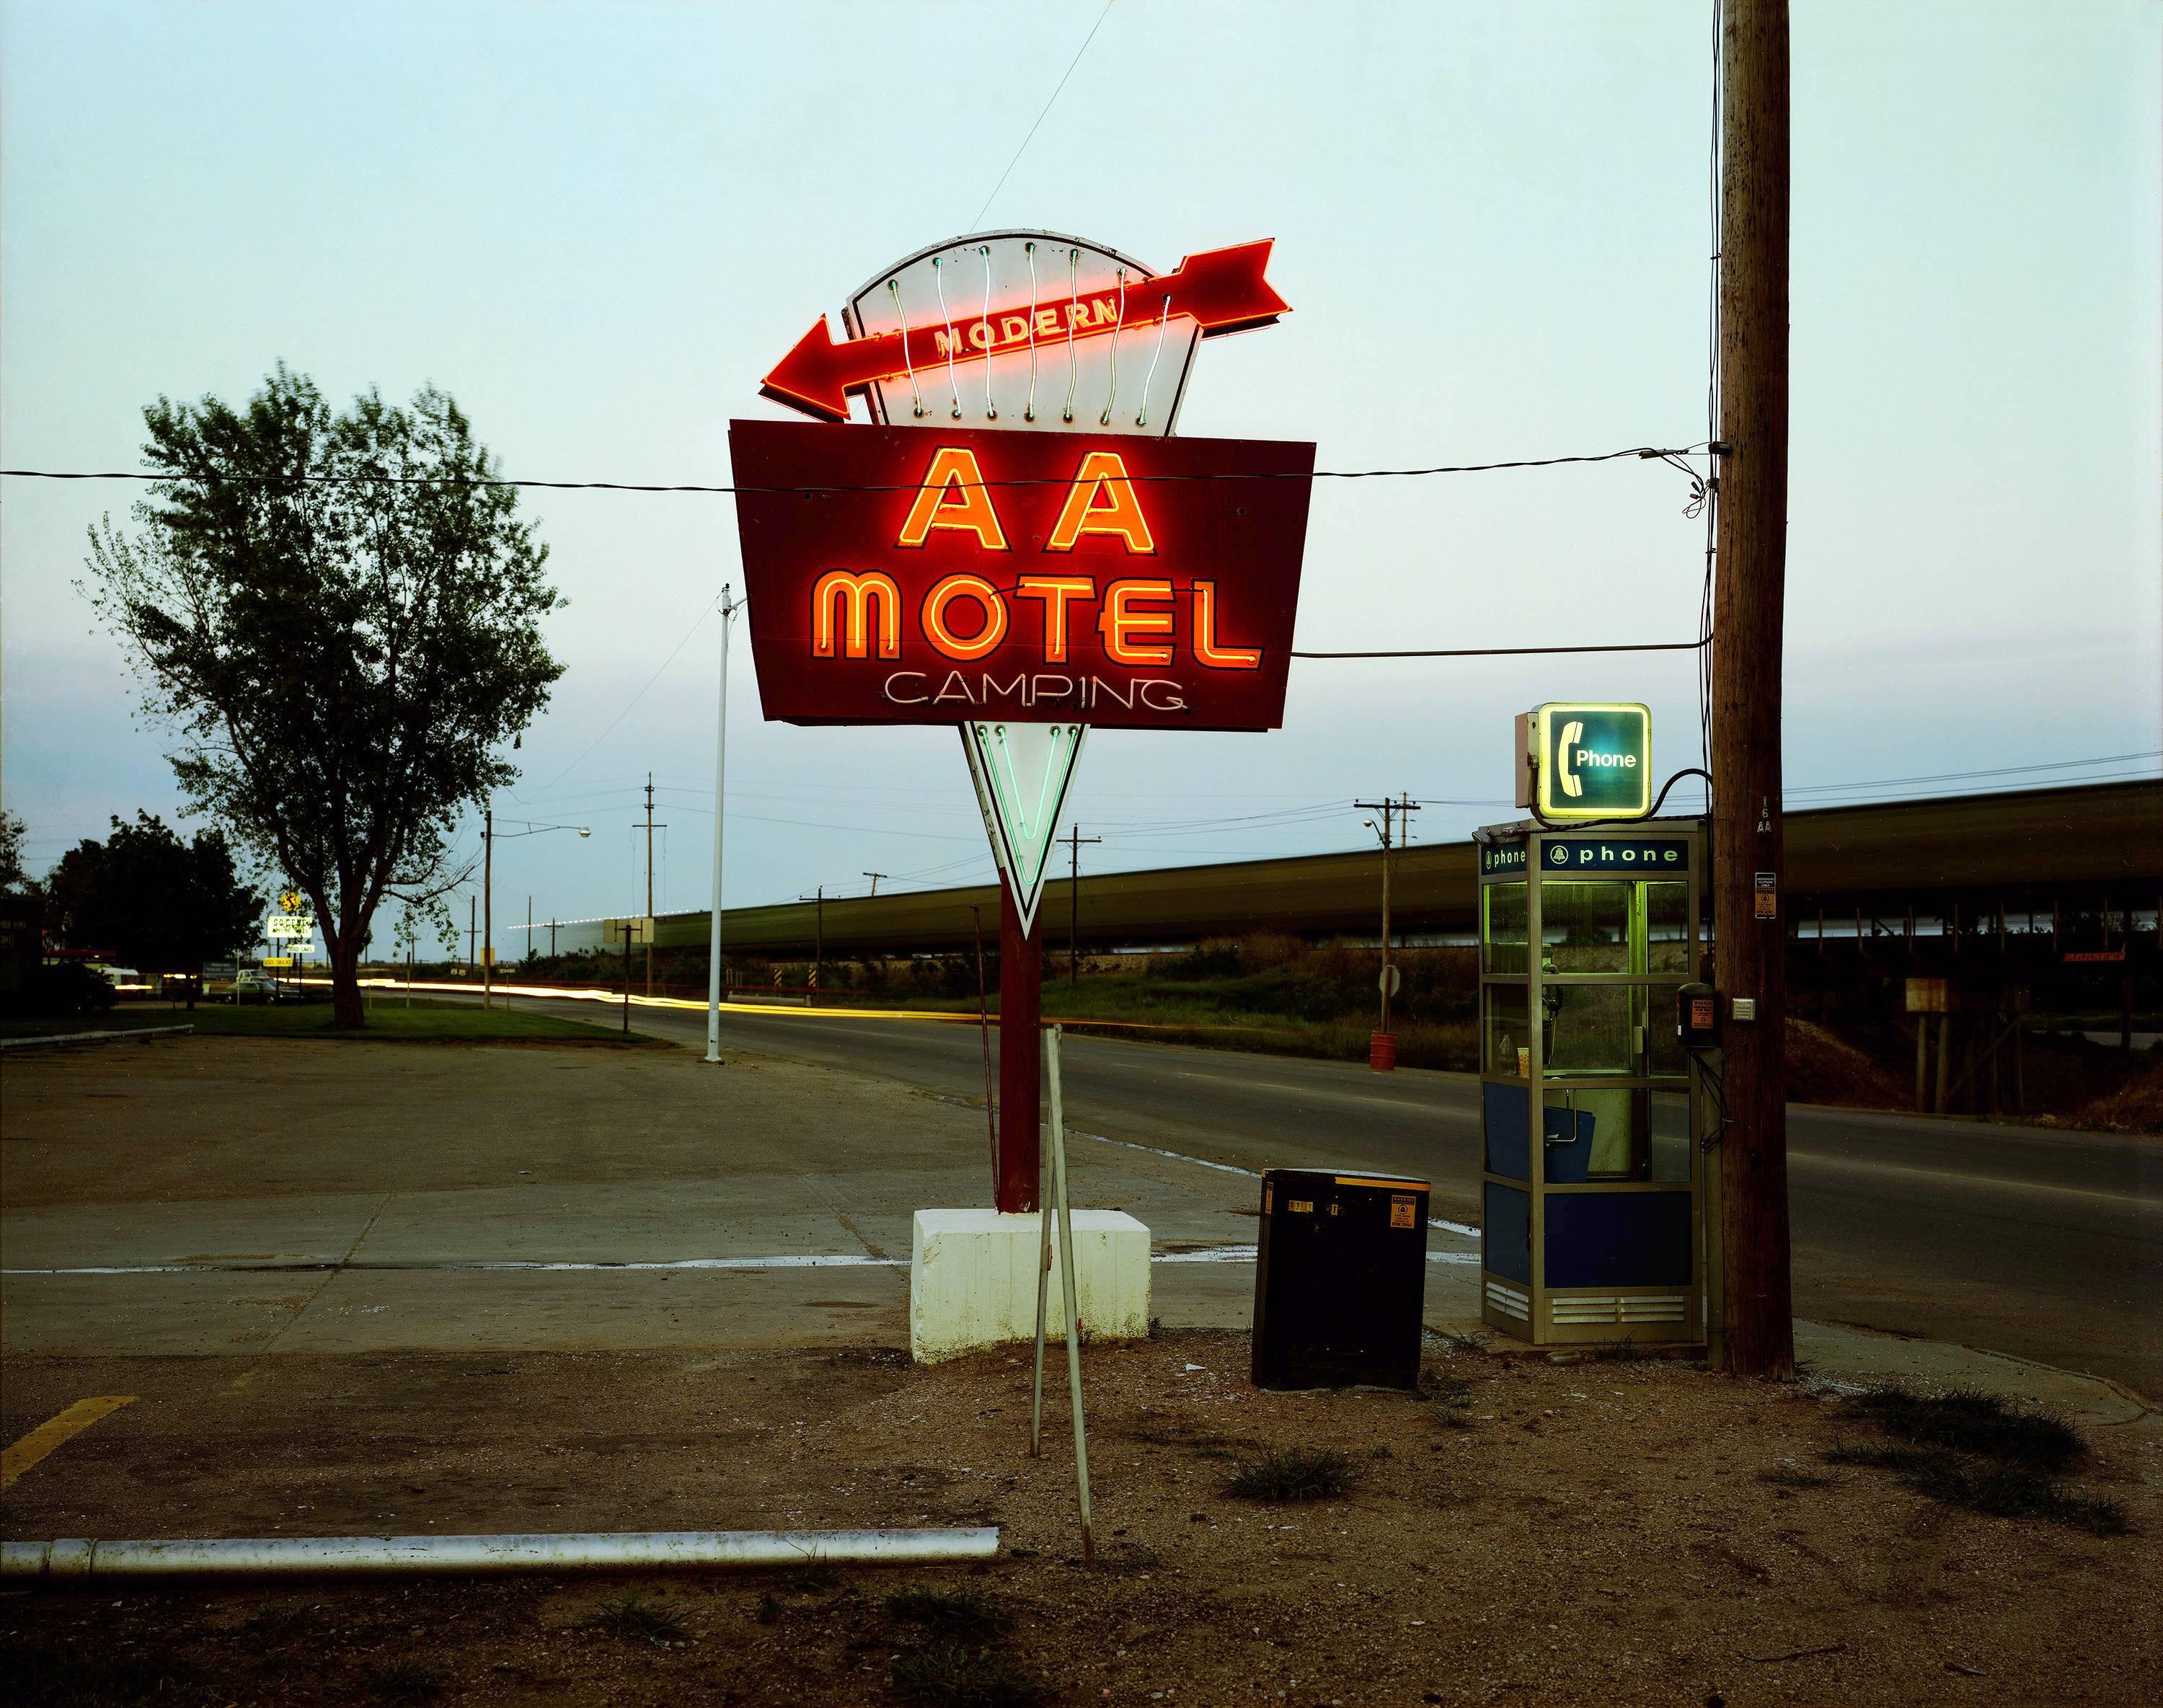 Steve Fitch Landscape Photograph - AA Motel, Holdrege, Nebraska, May 22, 1981